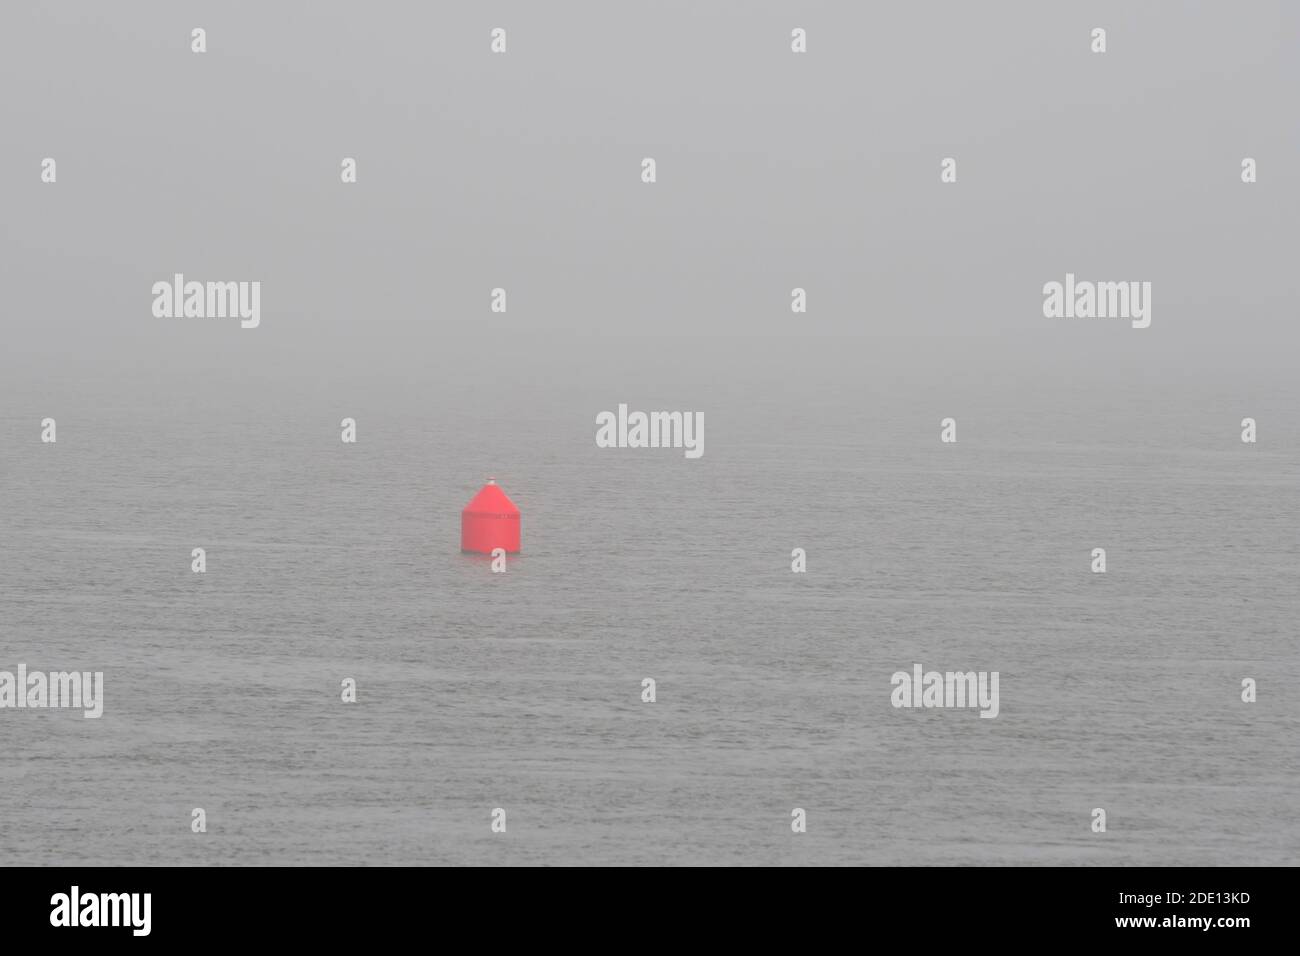 Eine kleine rote Navigationsboje in einem nebligen Ozean. Dies ist eine rote Boje. Das Meer ist ruhig und sehr neblig. Stockfoto